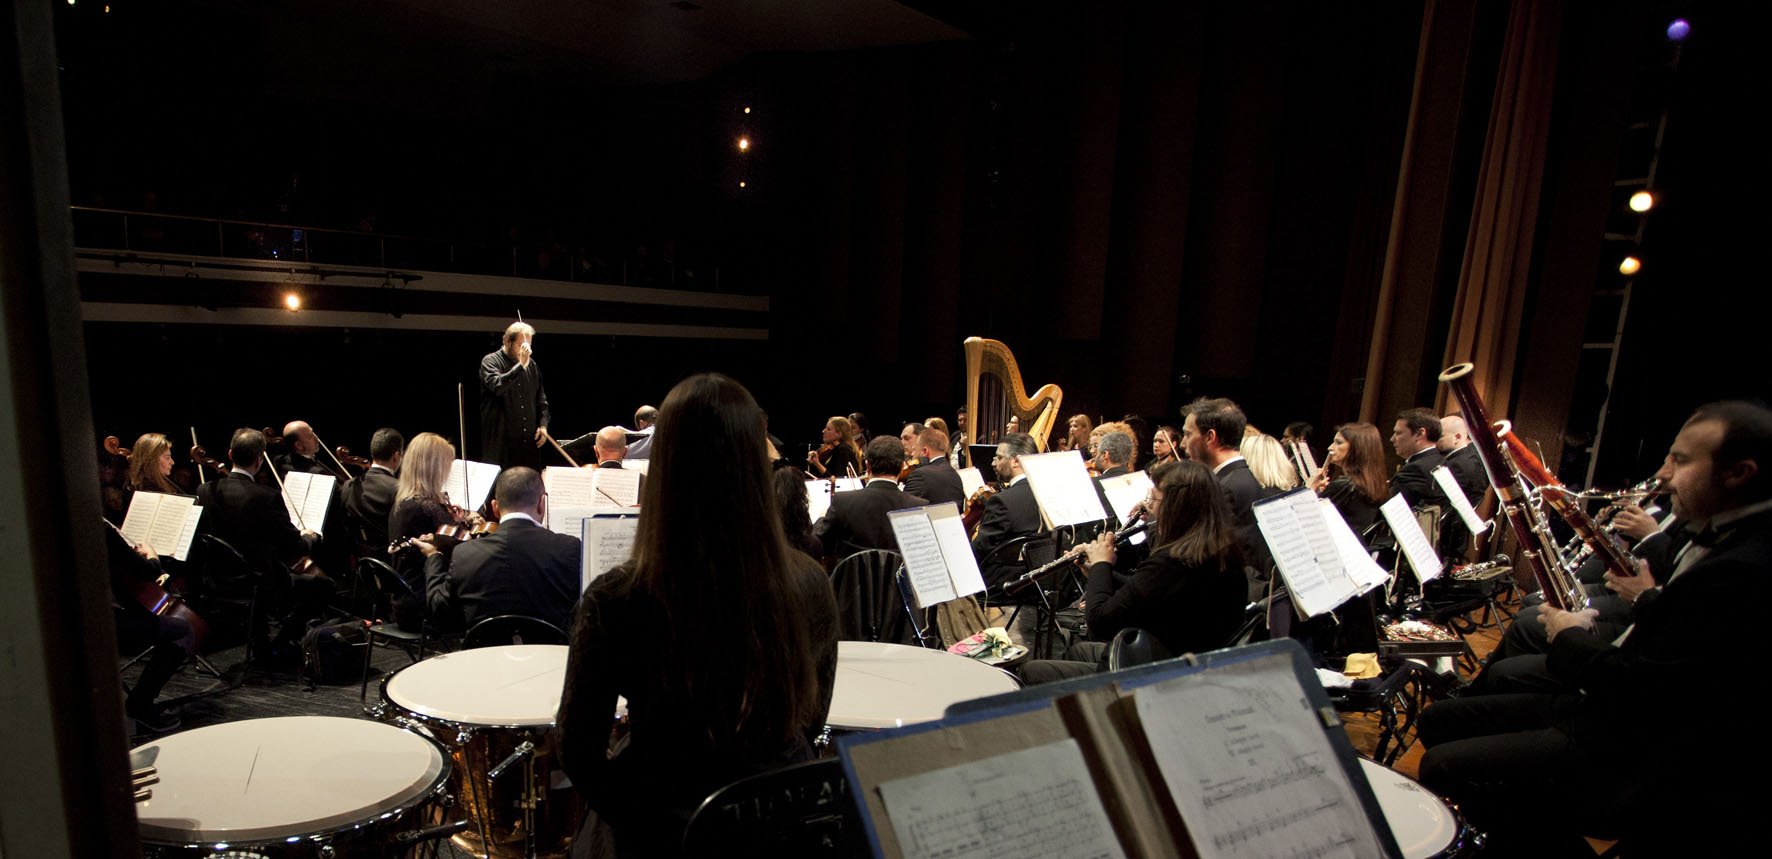 Η Συμφωνική Ορχήστρα του Δήμου Αθηναίων συναντά μικρούς και μεγάλους στο θέατρο Παλλάς